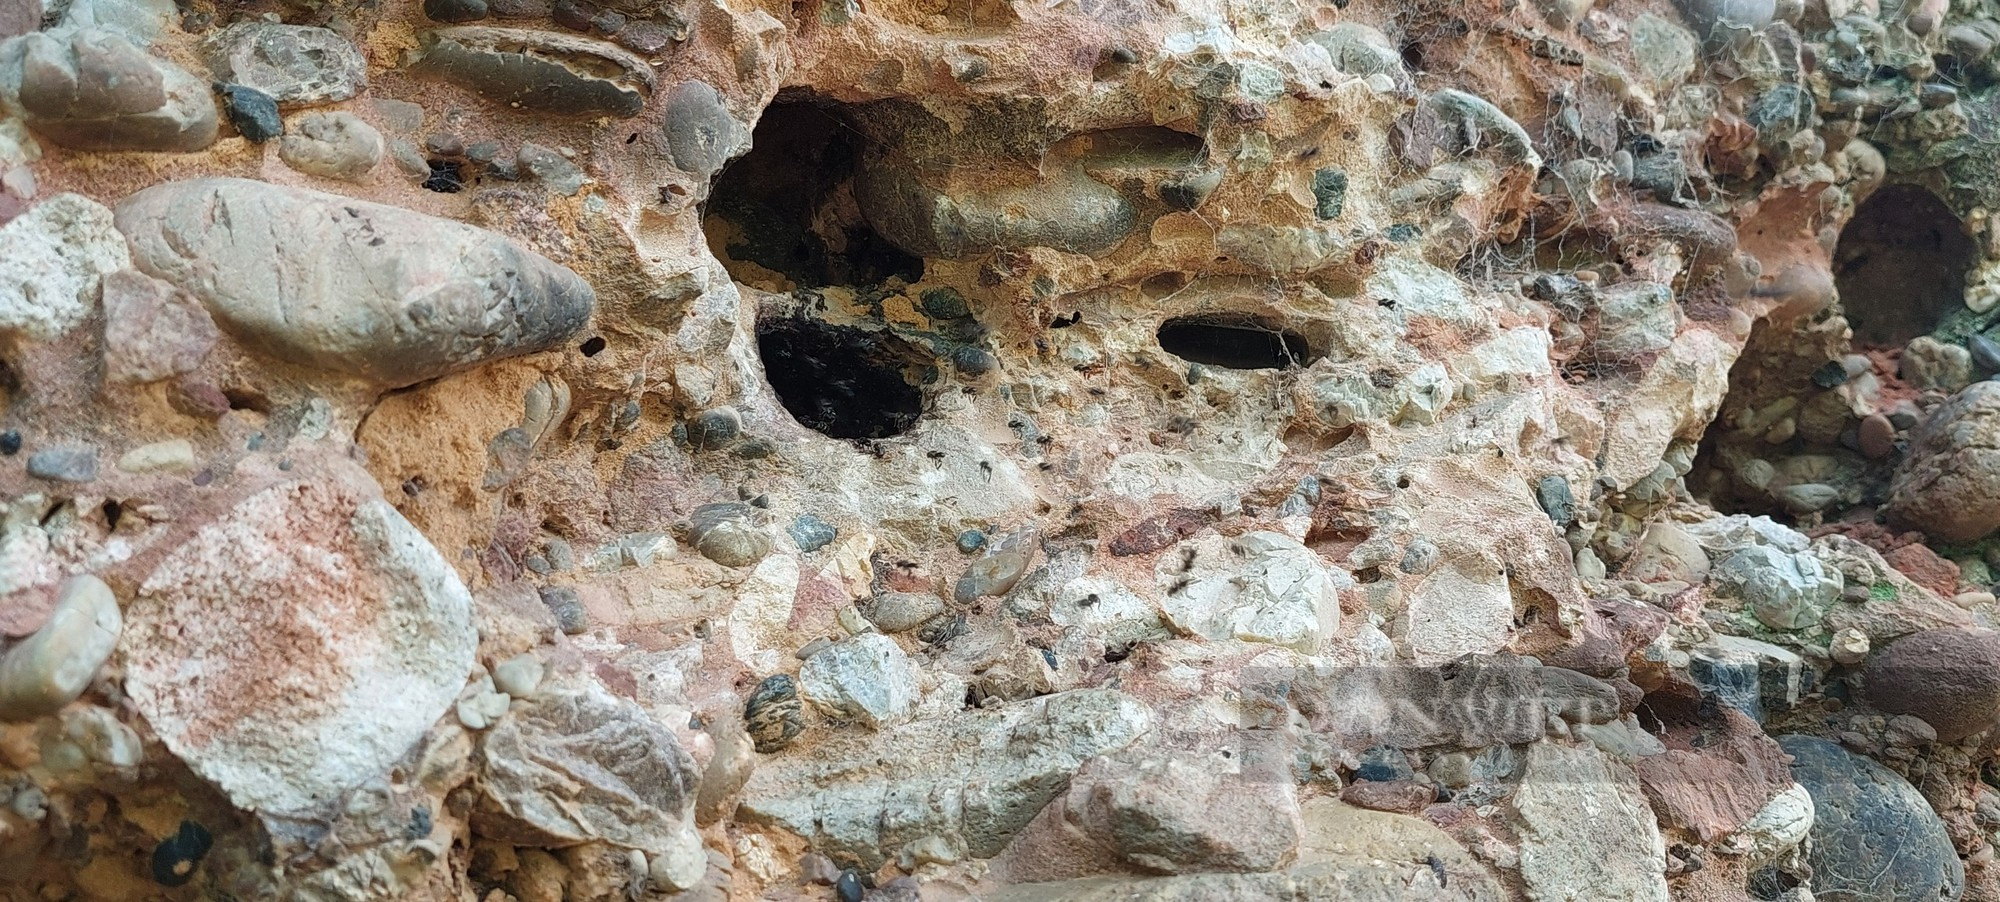 Loài ong lạ tí hon làm tổ ở khe đá dưới chân núi Pha Luông - Ảnh 2.